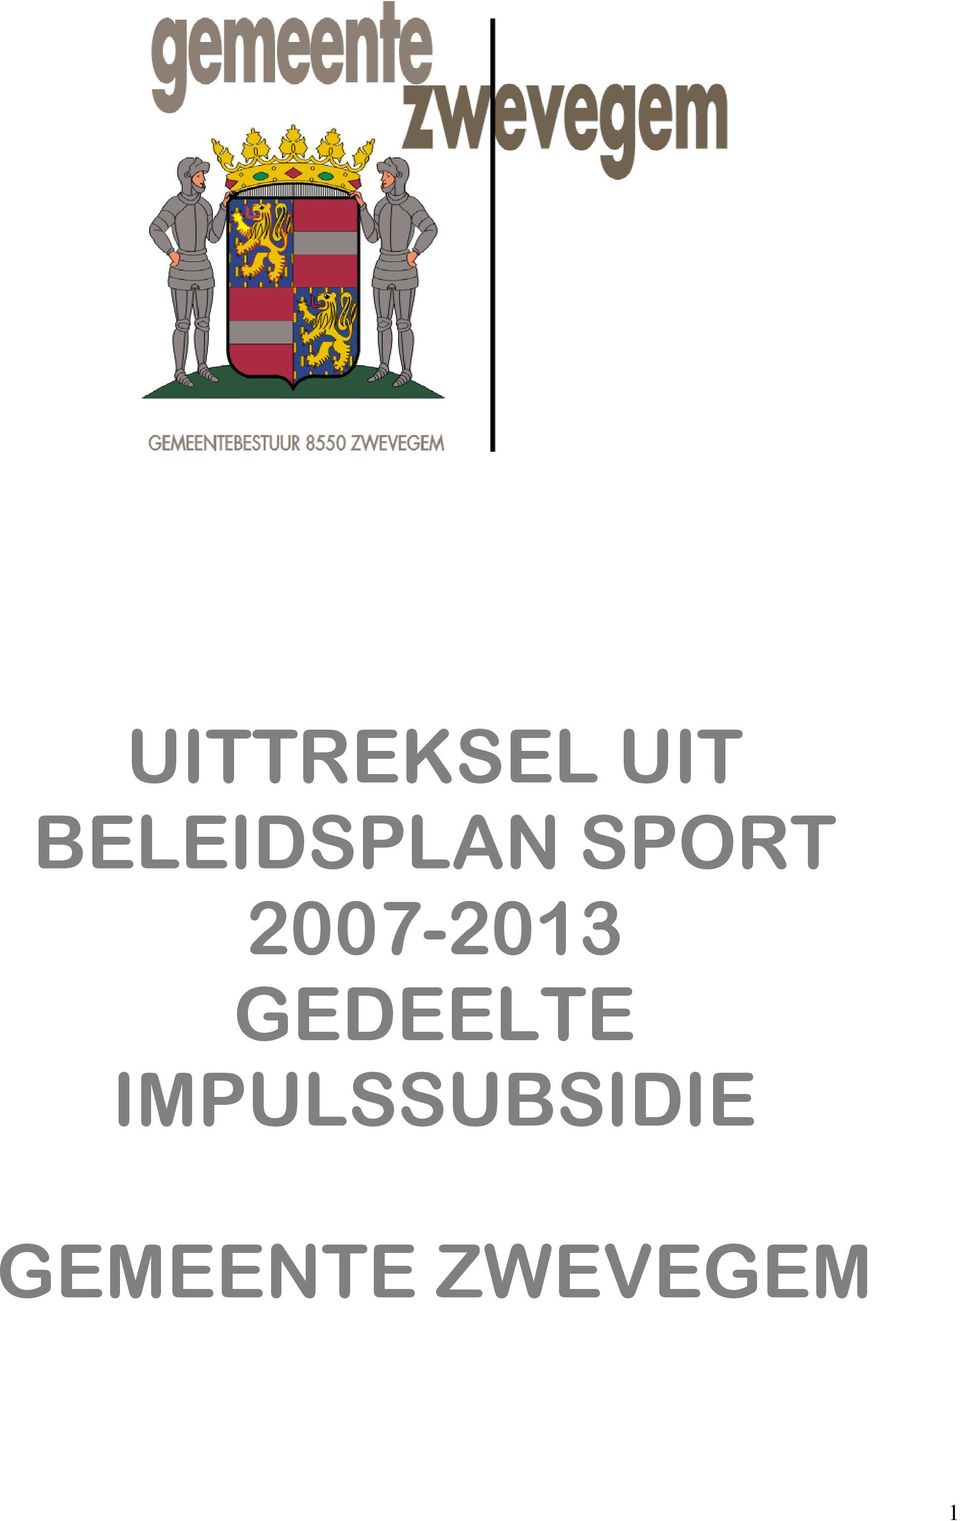 2007-2013 GEDEELTE